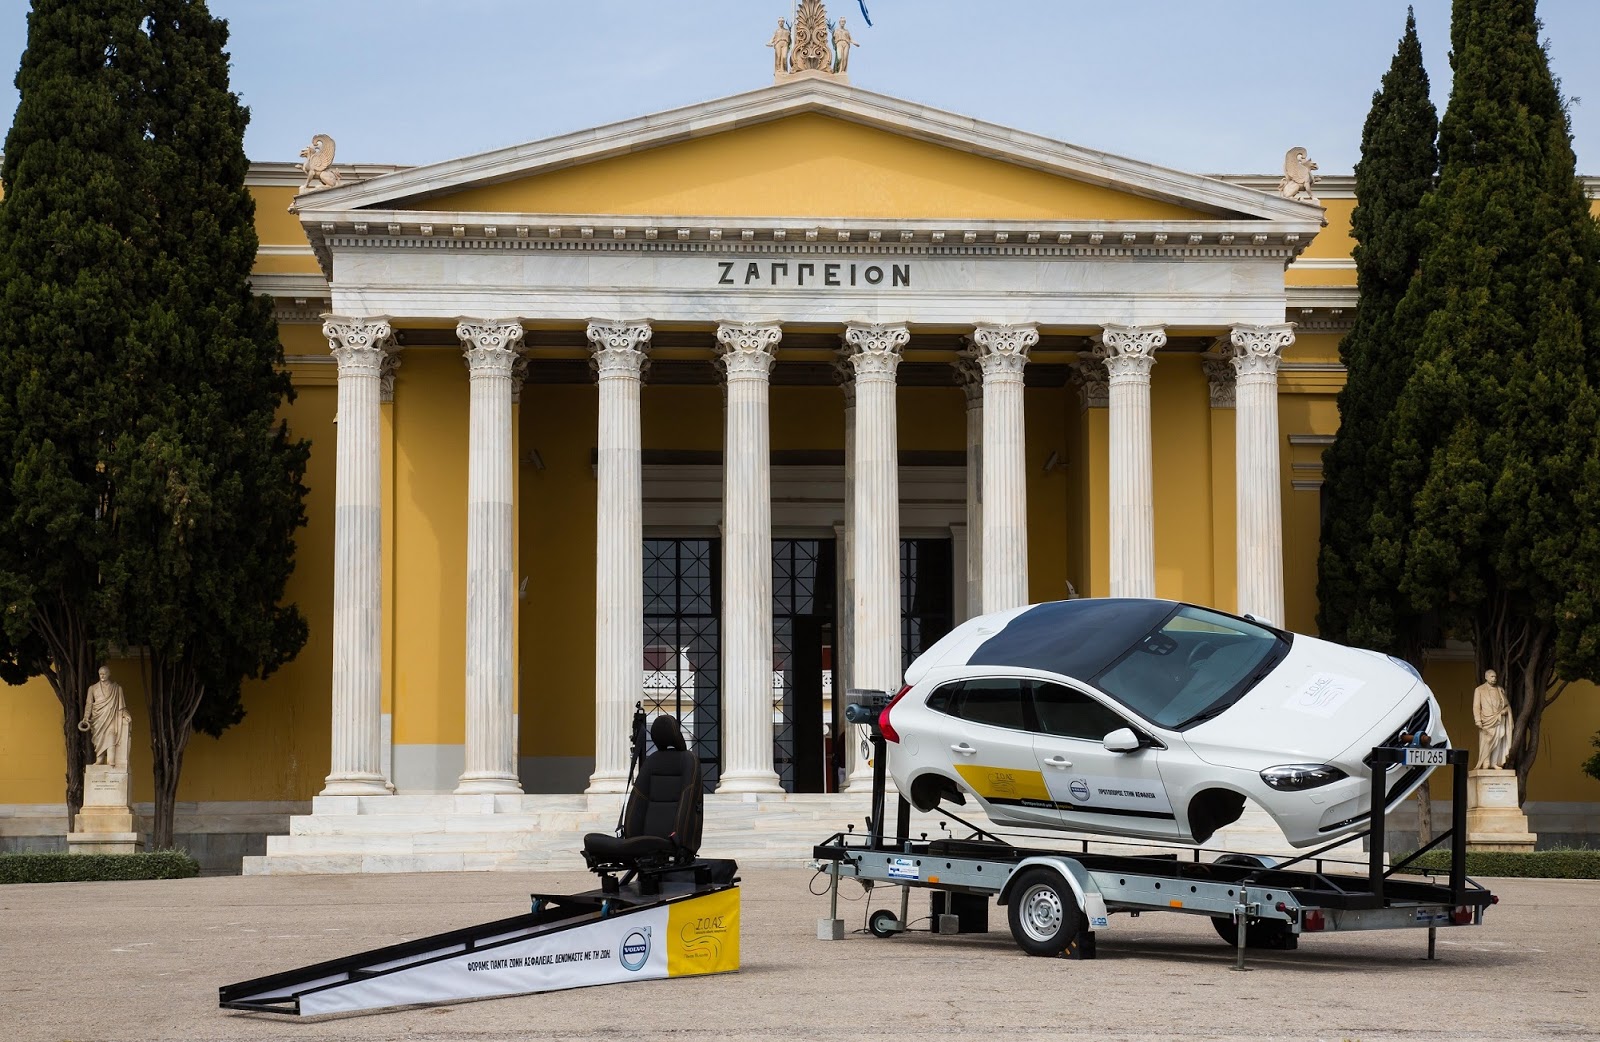 VOLVO2BKAI2BIOA25CE25A32B25CE25A325CE25A425CE259F2B25CE259625CE259125CE25A025CE25A025CE259525CE259925CE259F 2 Εβδομάδα κυκλοφοριακής αγωγής στο Ζάππειο με συμμετοχή της Volvo